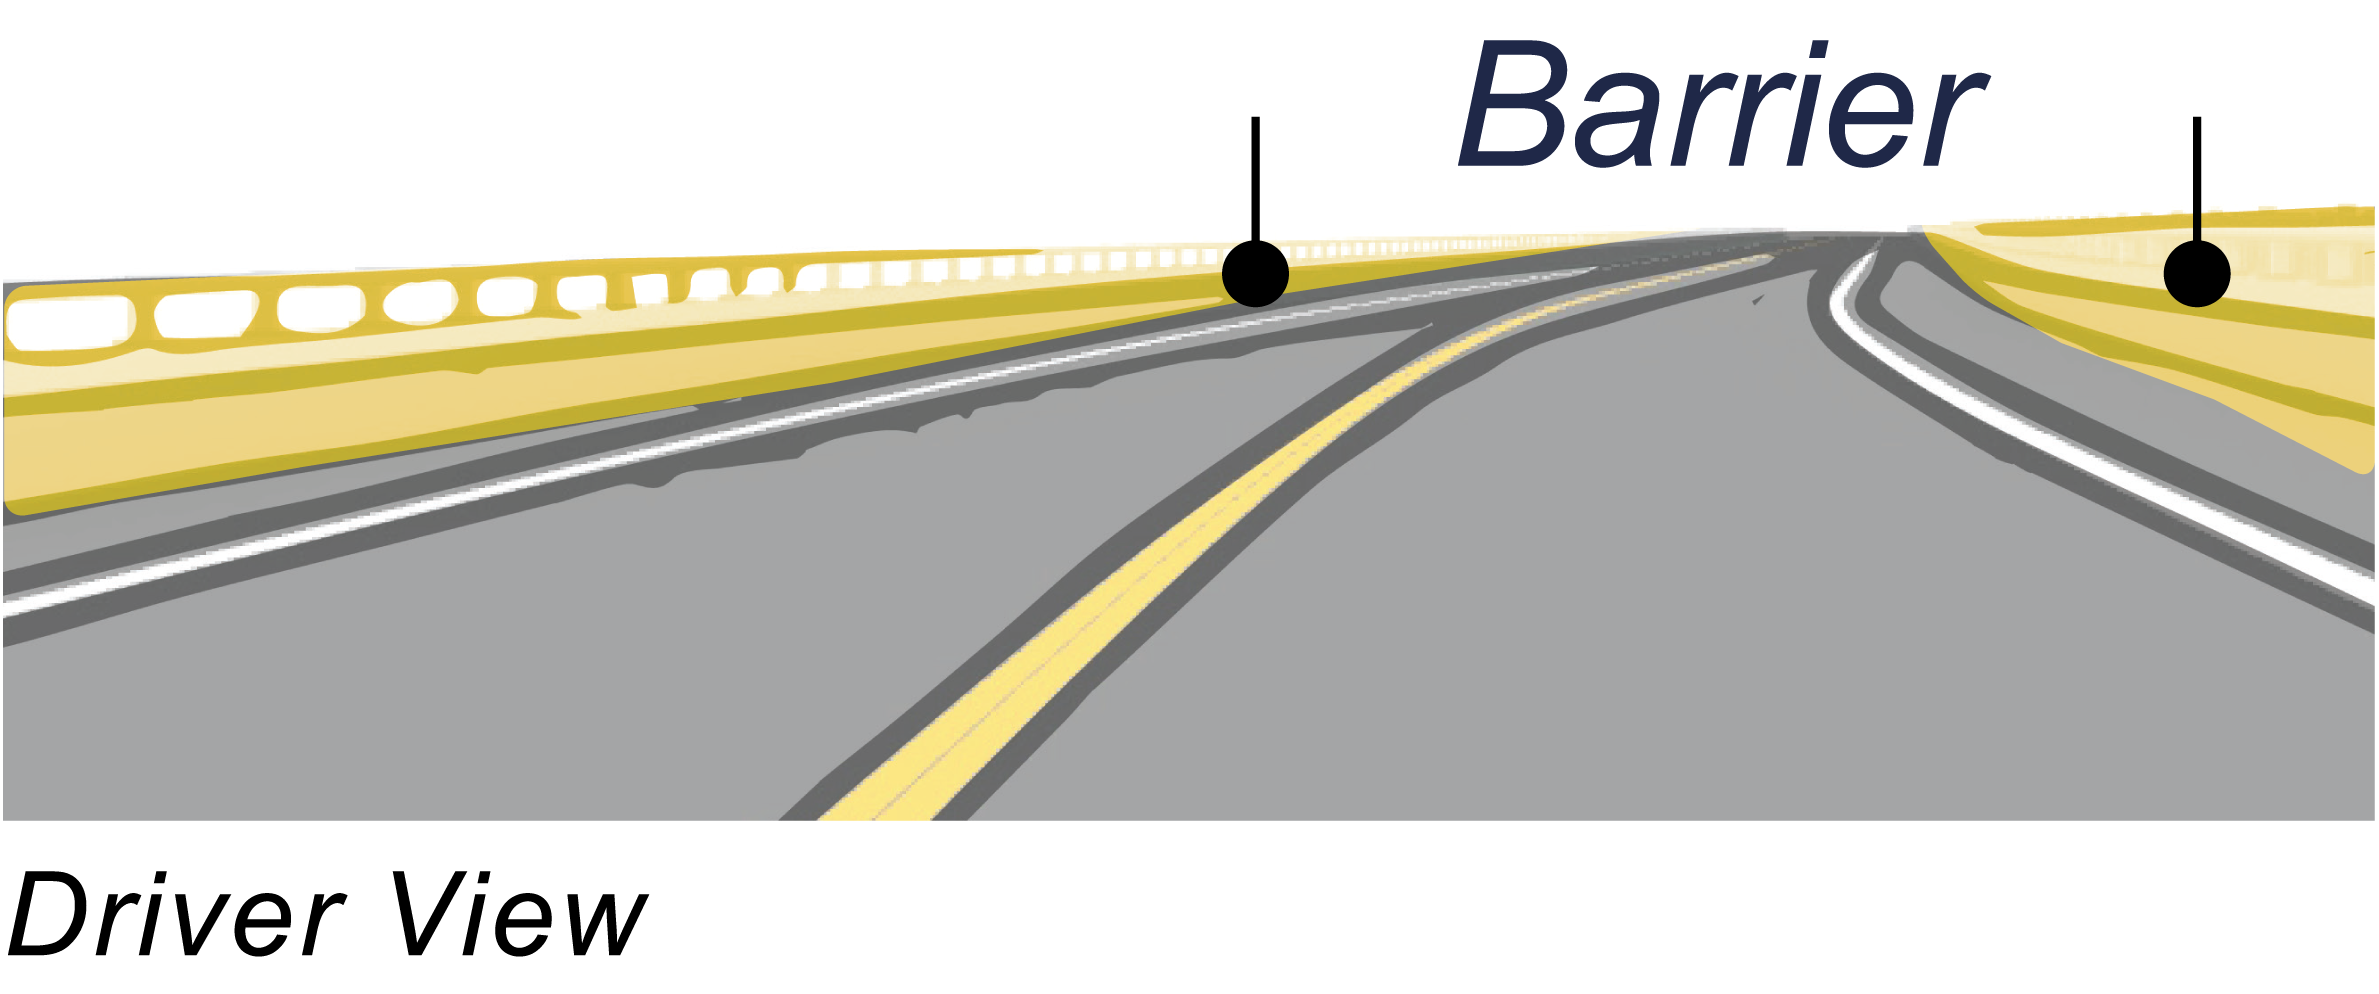 illustration of traffice barrier